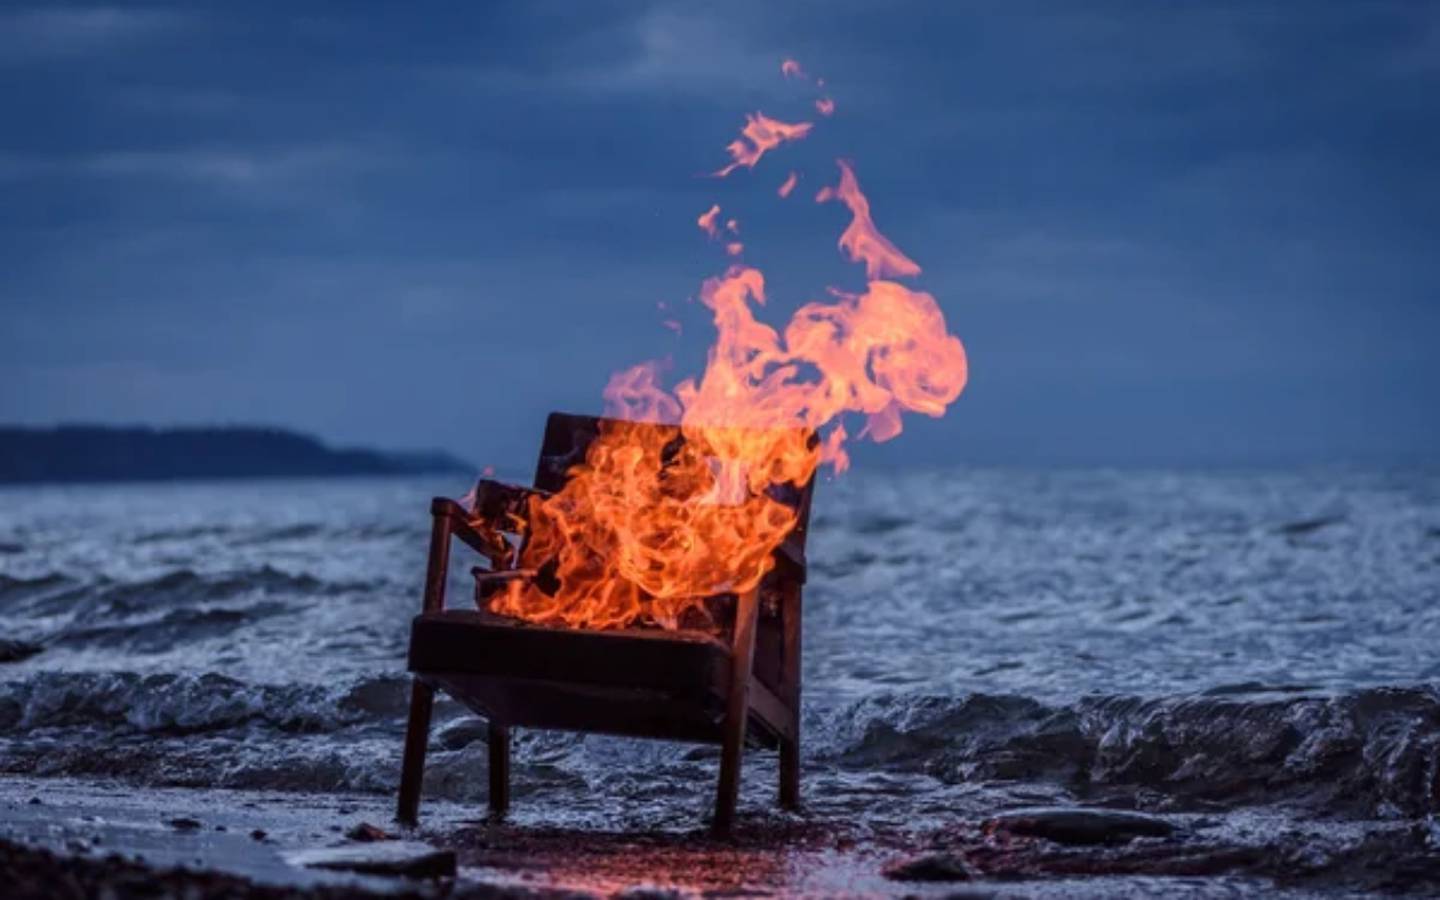 Una silla se quema en la orilla del mar en un momento que parece el amanecer o el ocaso.